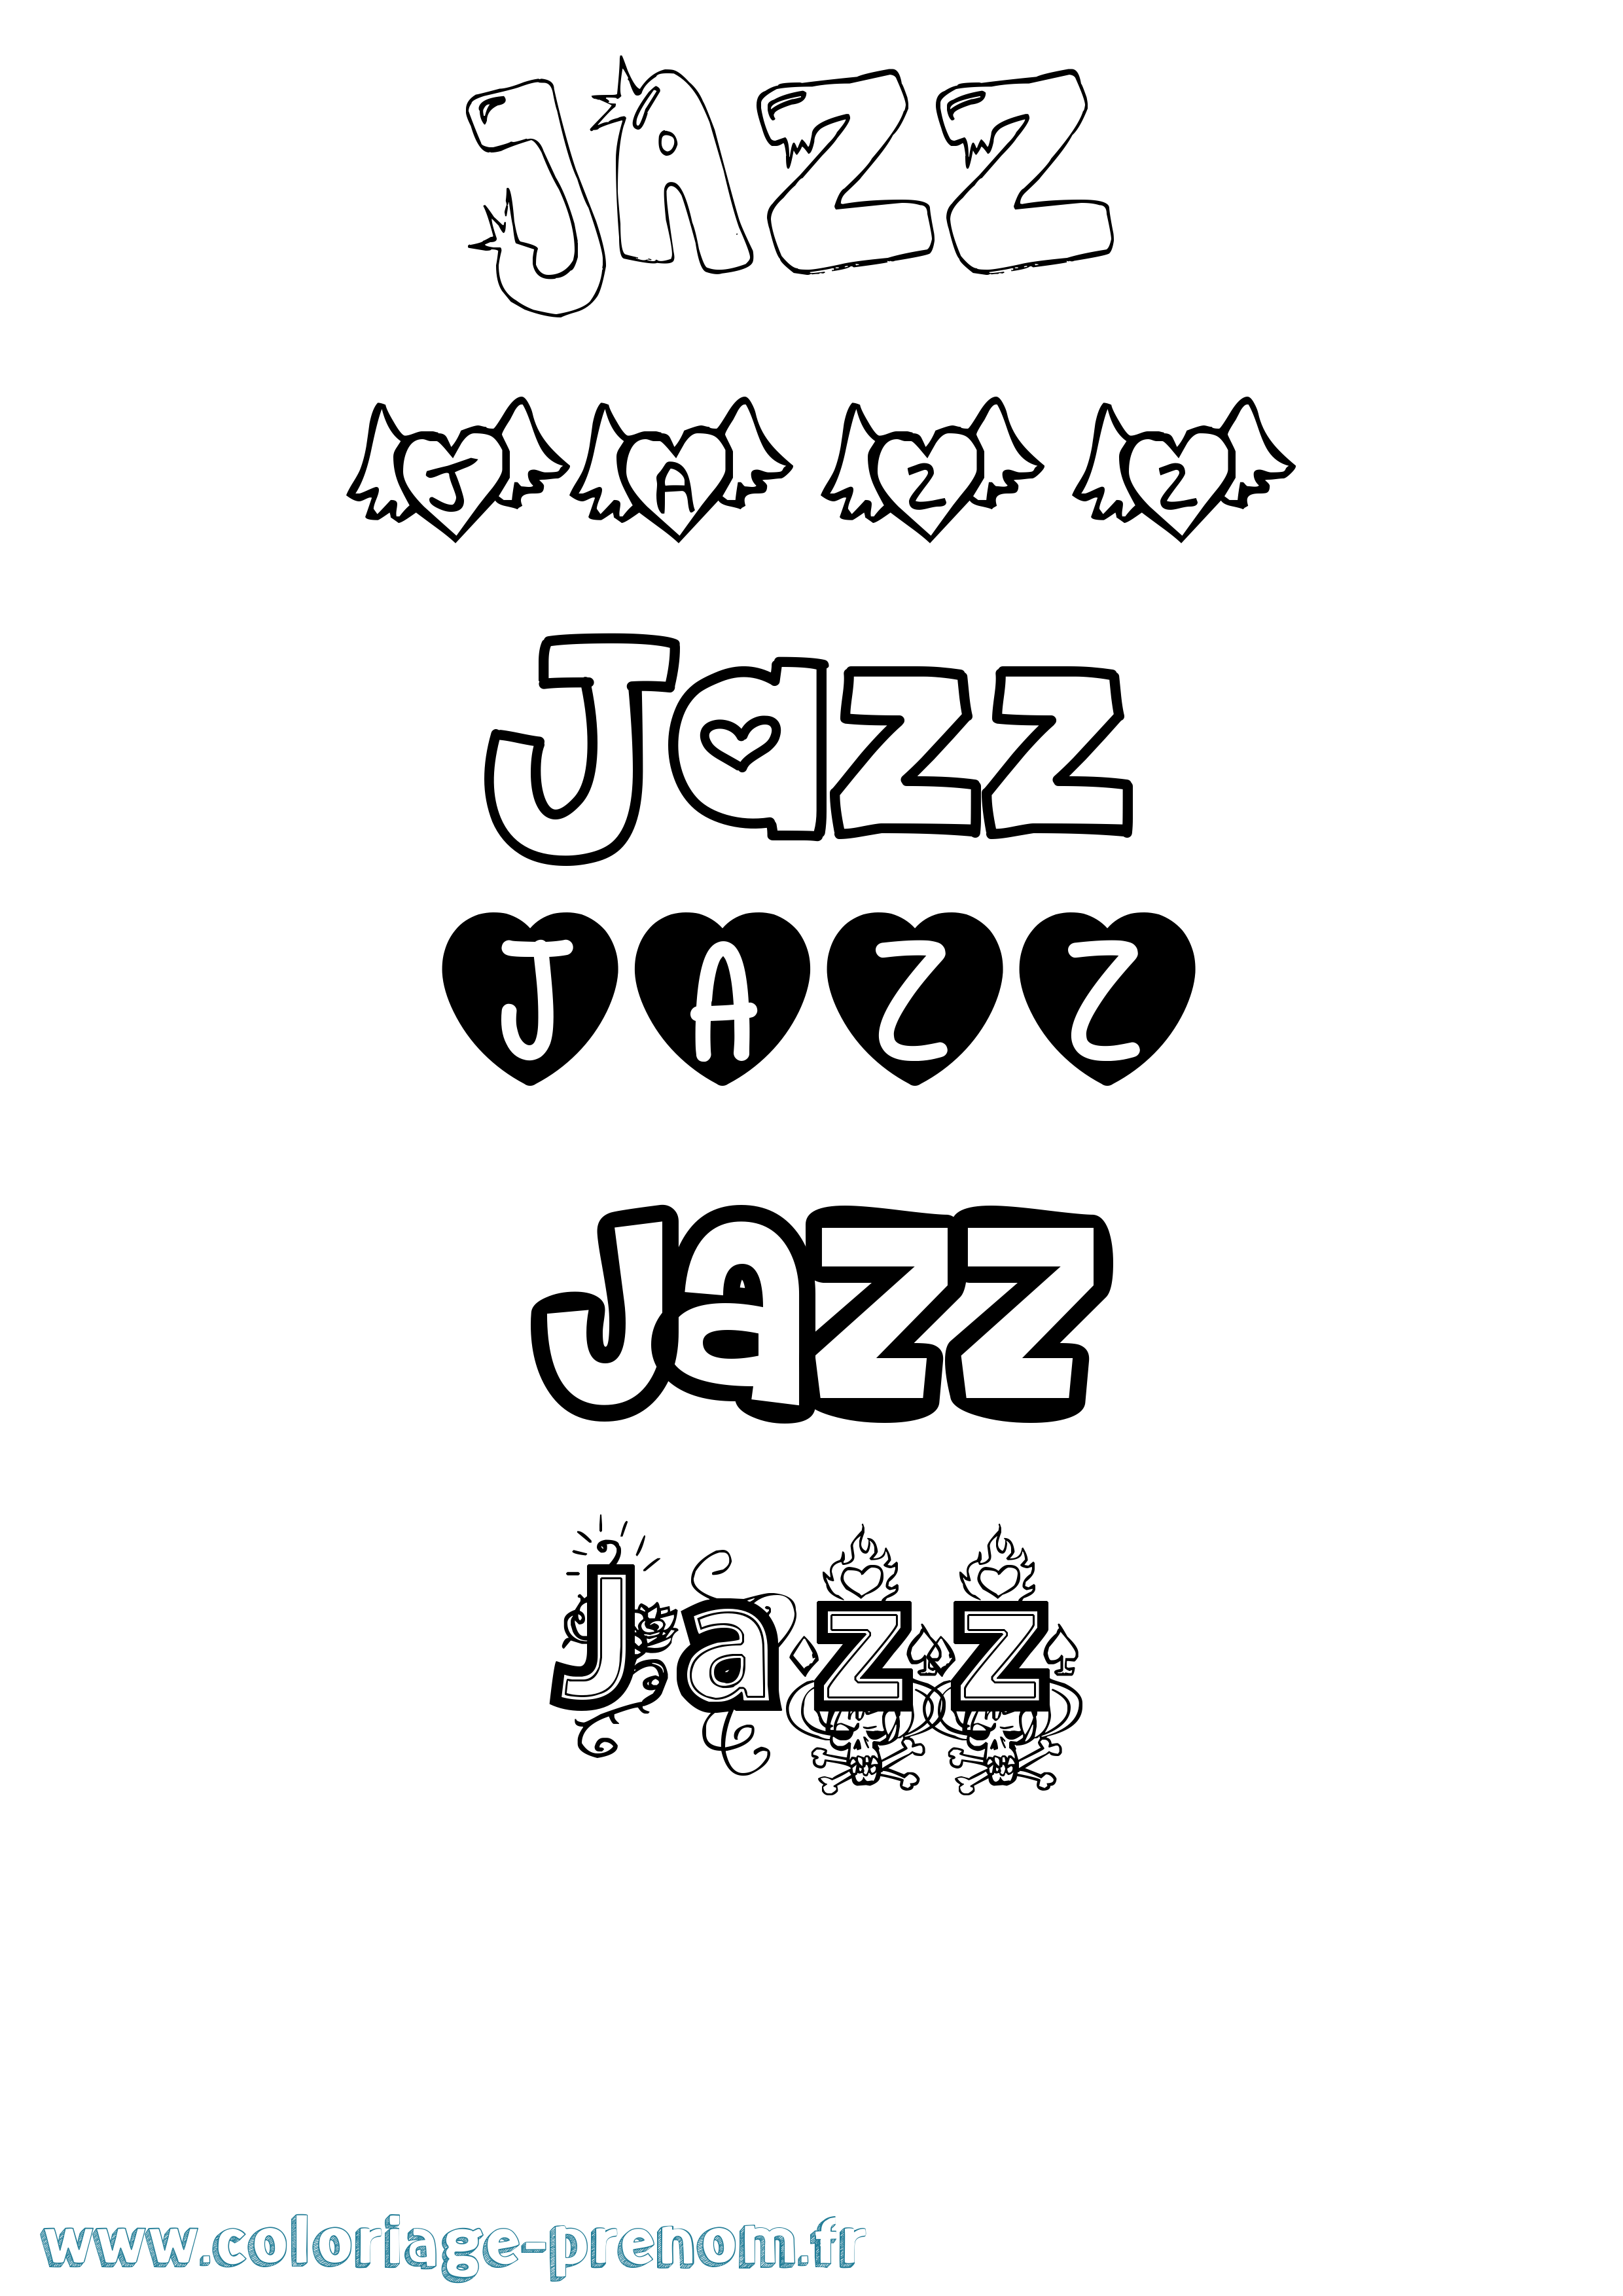 Coloriage prénom Jazz Girly